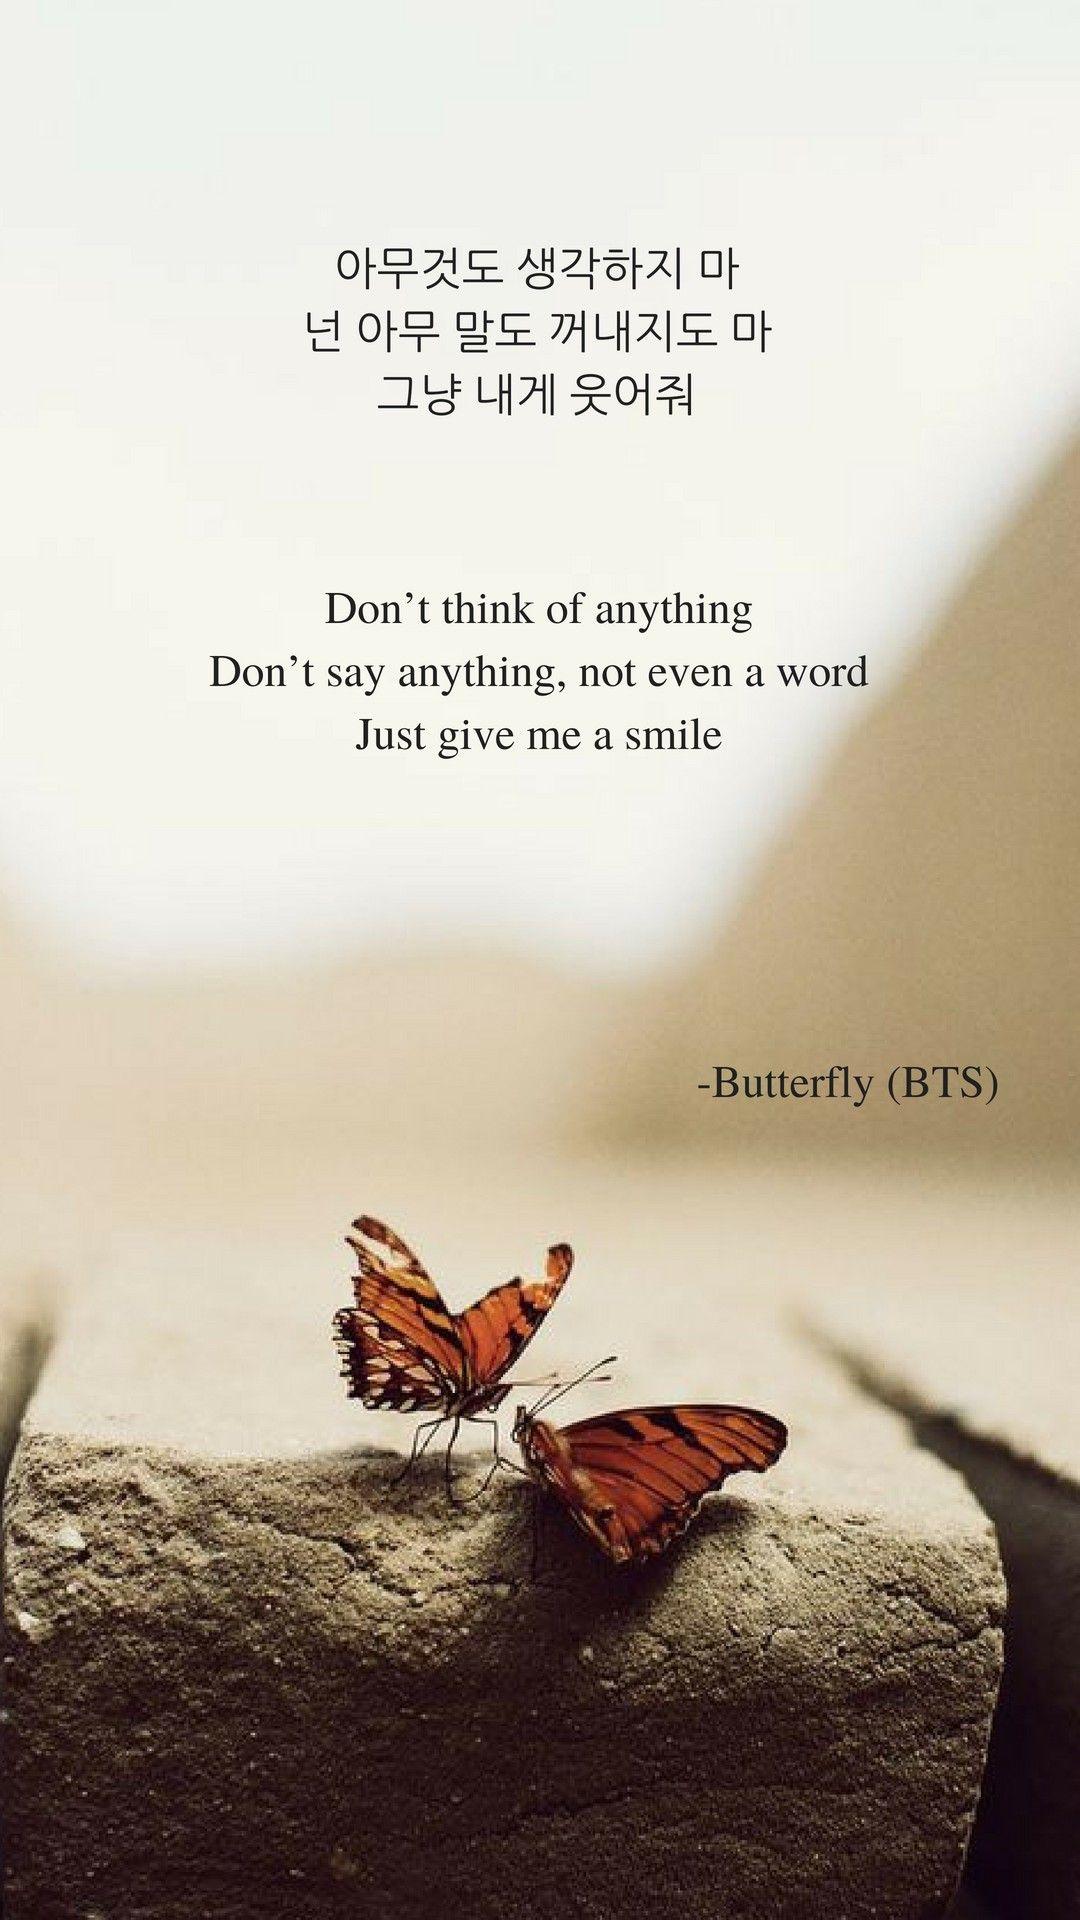 Butterfly by BTS Lyrics wallpaper. KPOP Lyrics Wallpaper. Bts